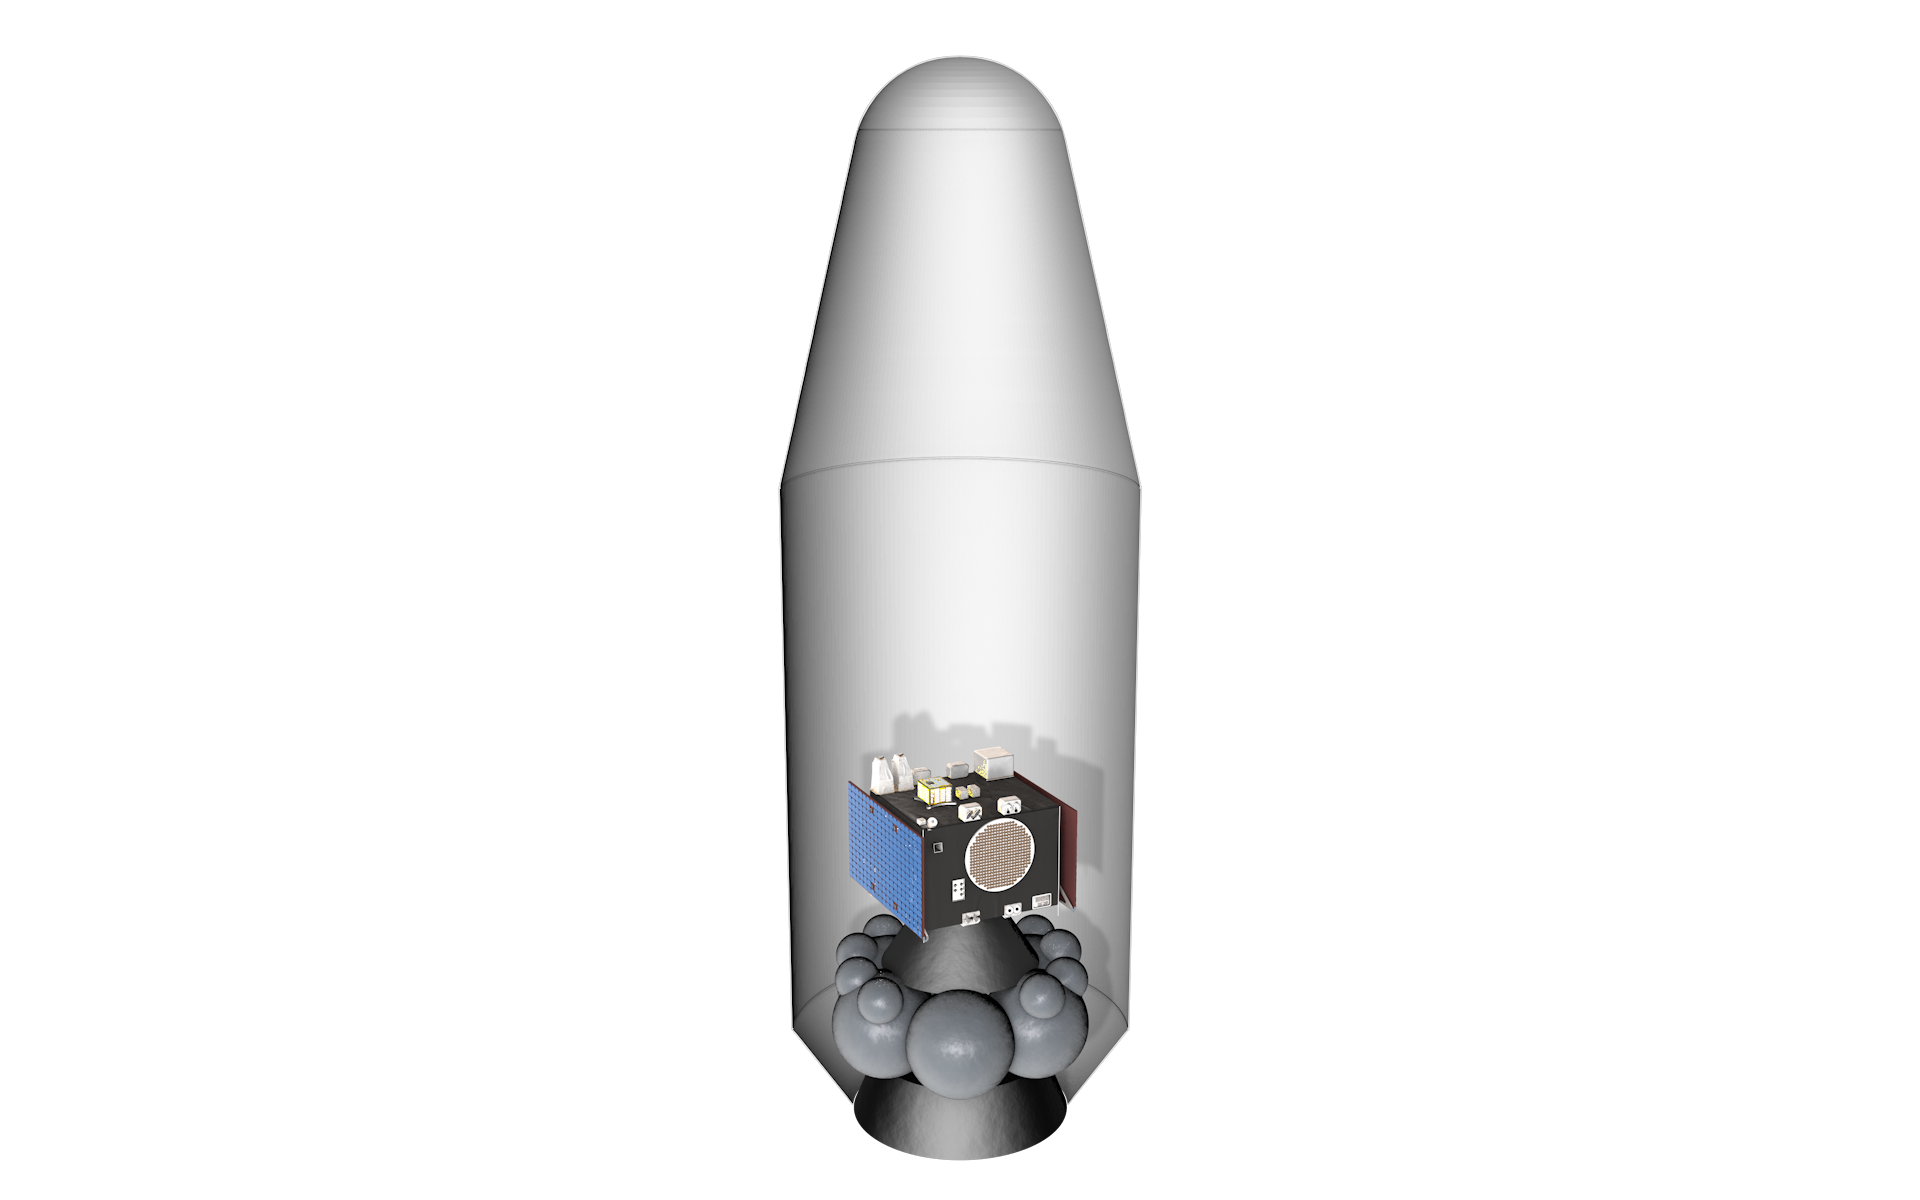 OHB spacecraft proposal